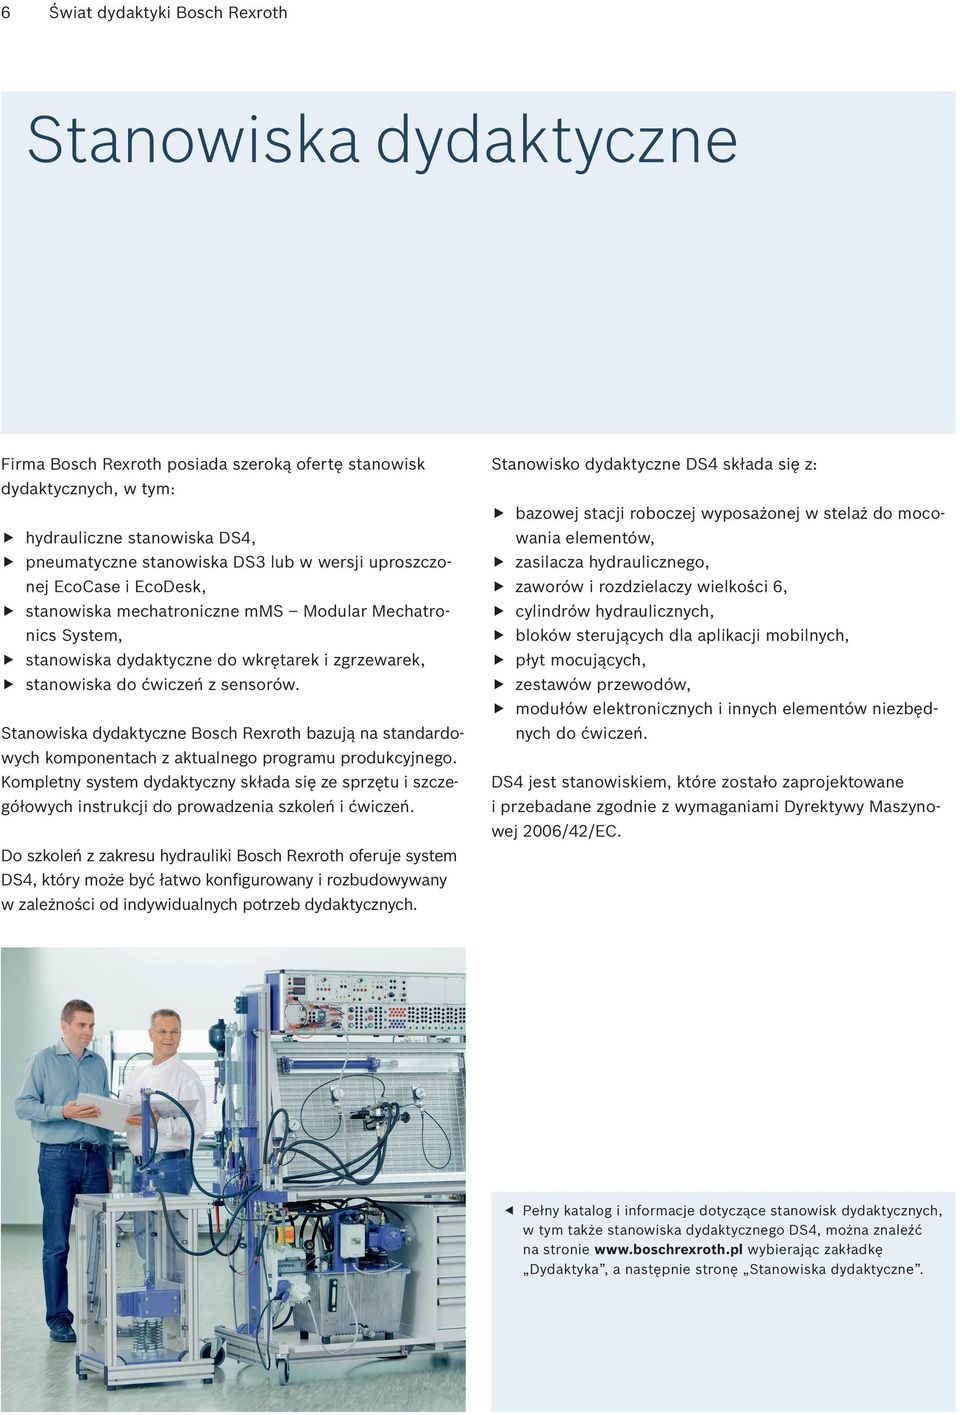 Stanowiska dydaktyczne Bosch Rexroth bazują na standardowych komponentach z aktualnego programu produkcyjnego.